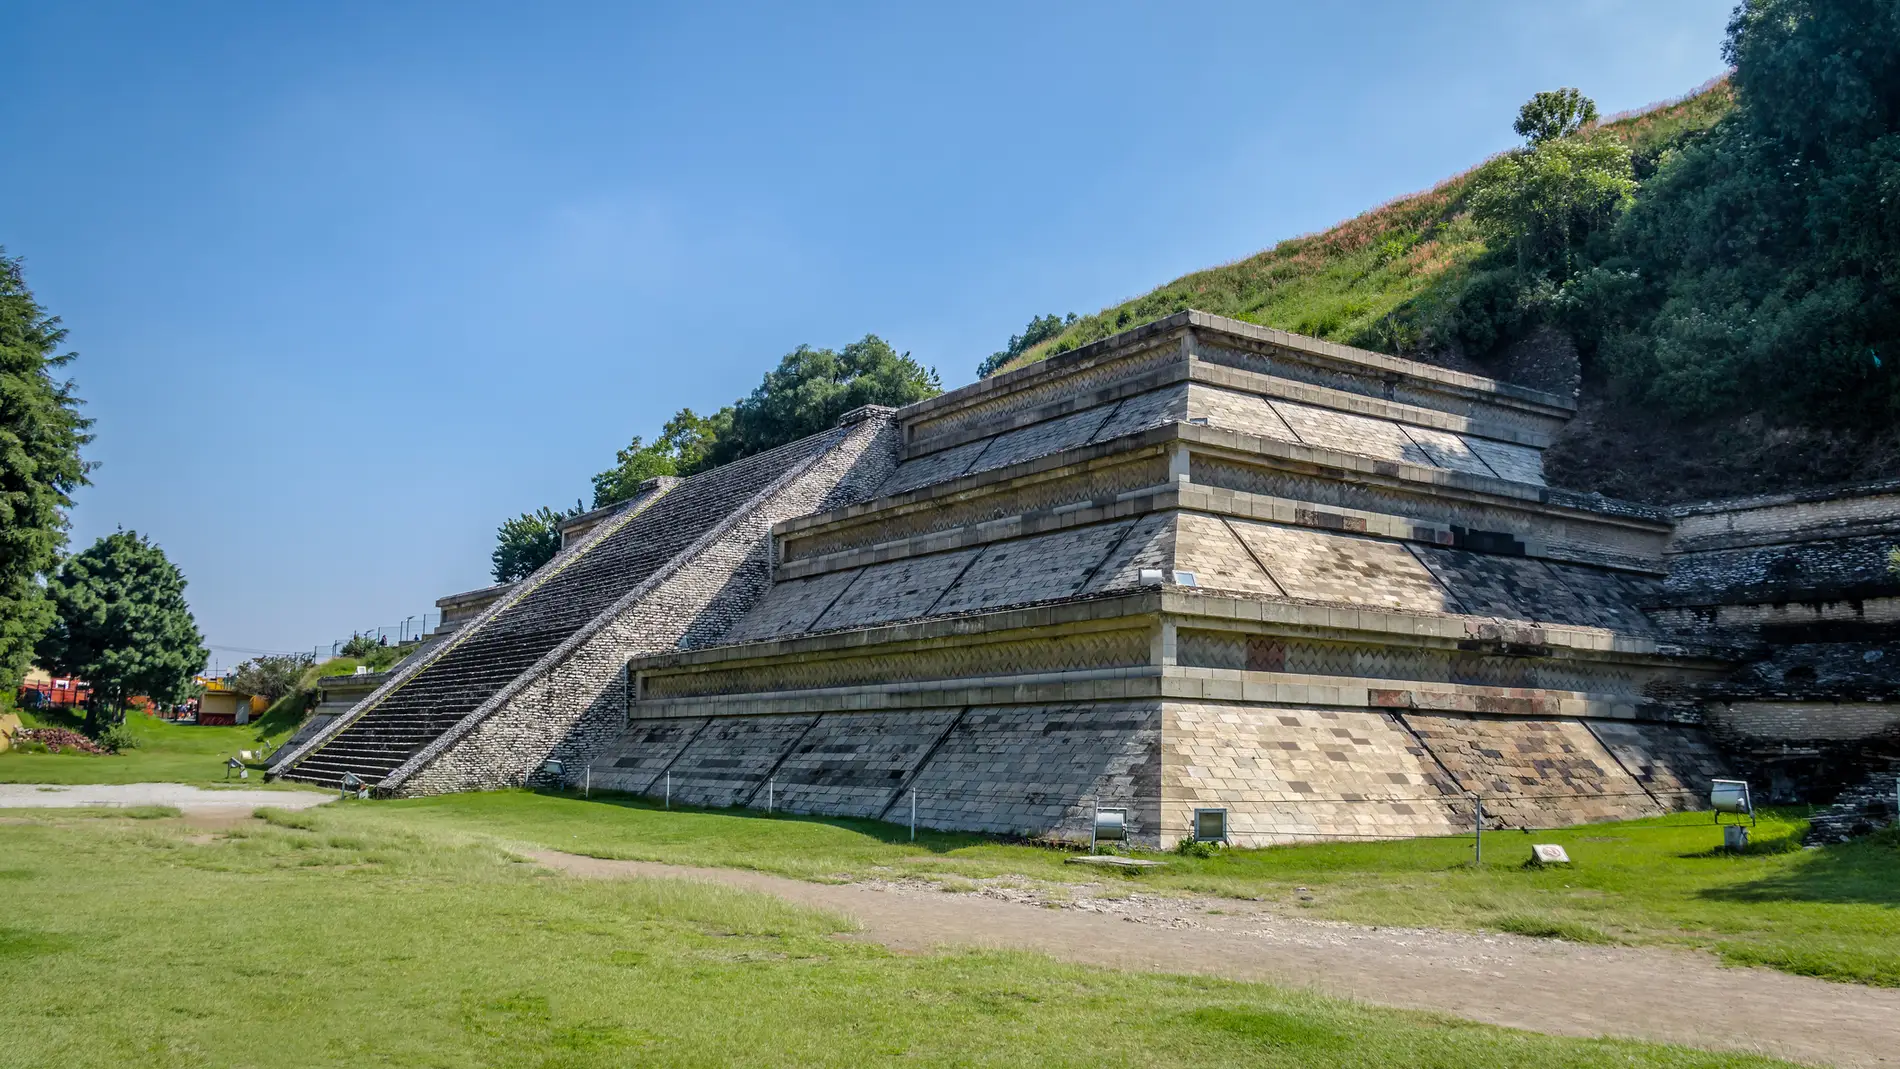 Esta es la pirámide más grande del mundo